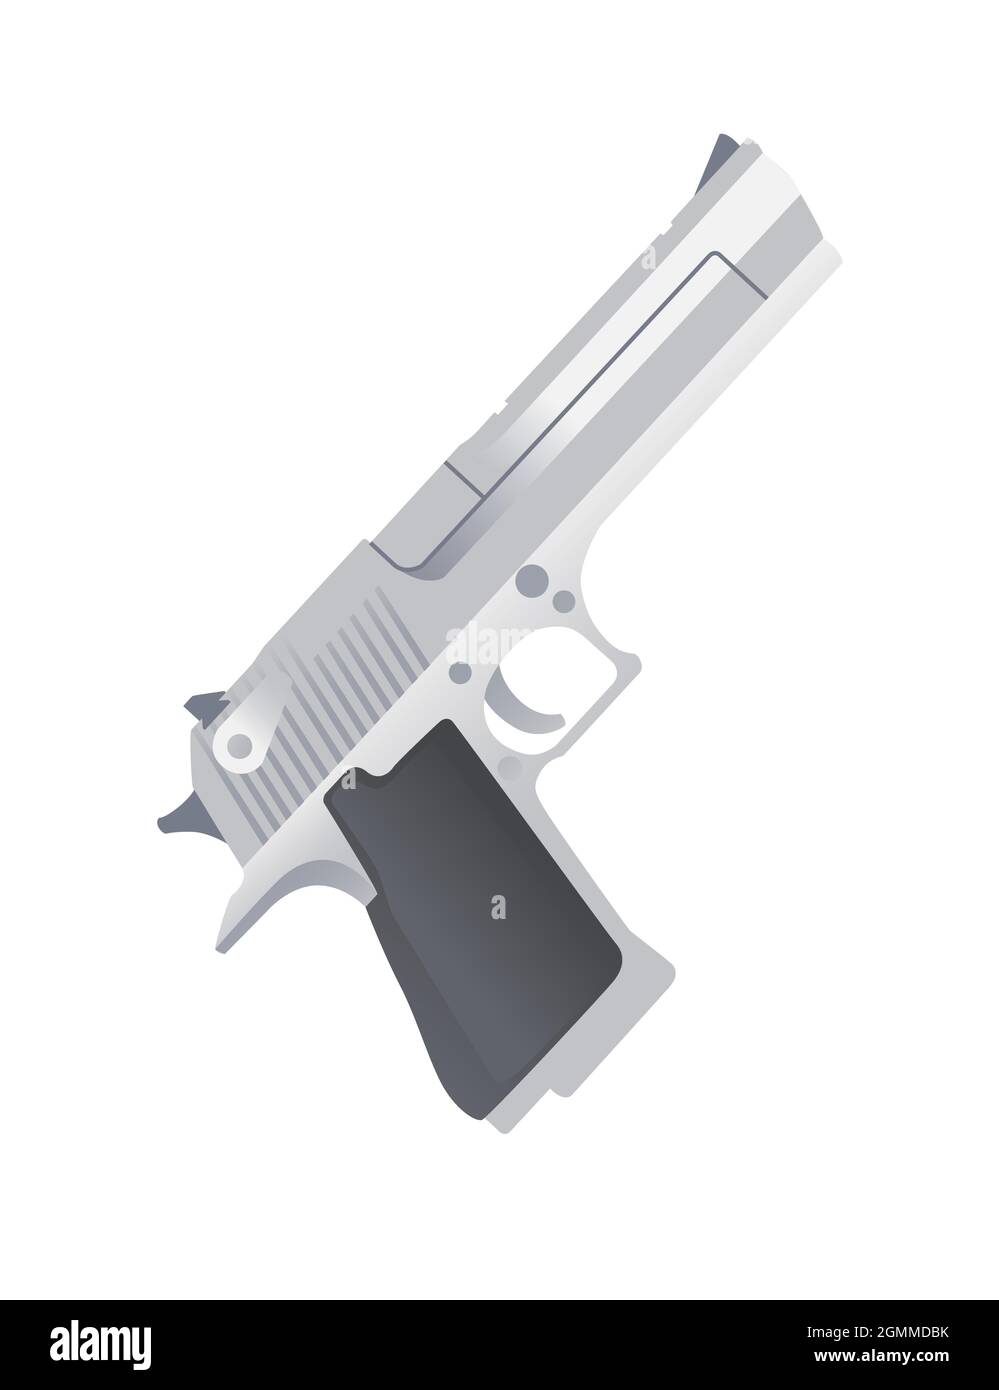 Modern handgun Desert Eagle pistol vector illustration on white background Stock Vector